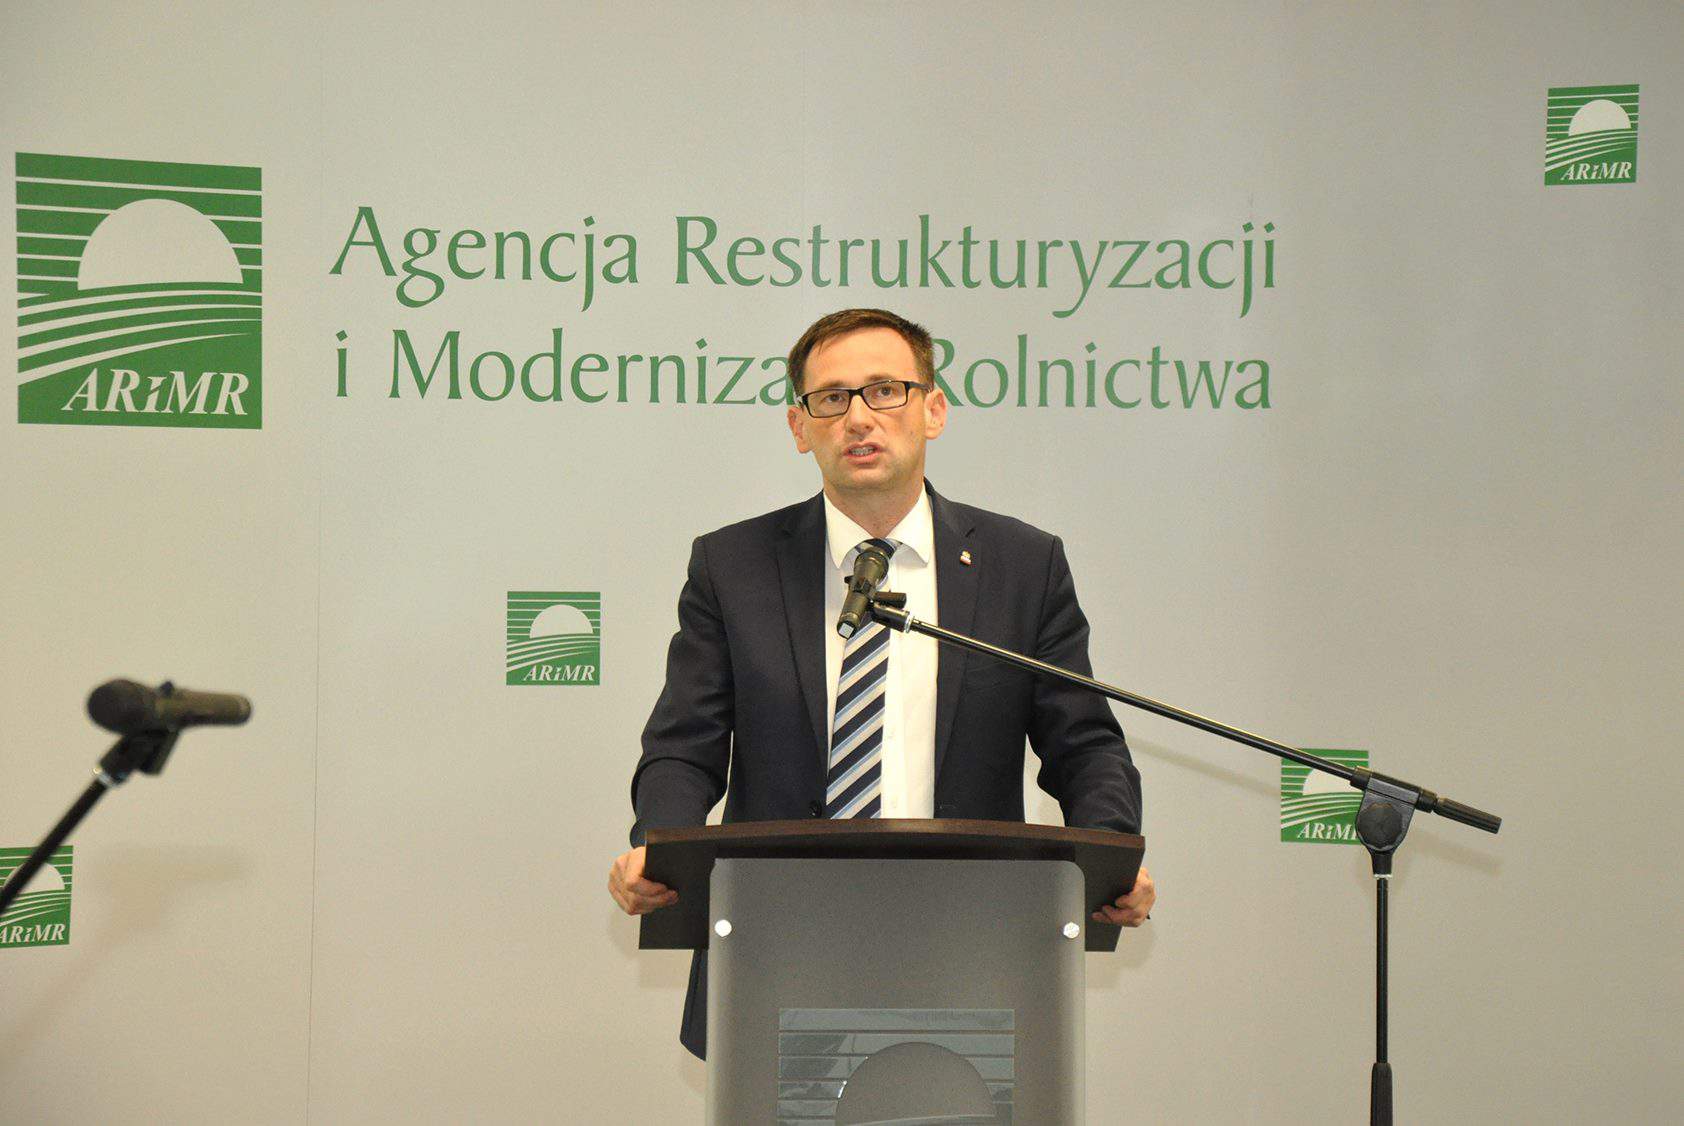 Daniel Obajtek rozpoczął kierowanie ARiMR pod koniec listopada 2015 roku –jako p.o. prezesa, a później już jako prezes. 